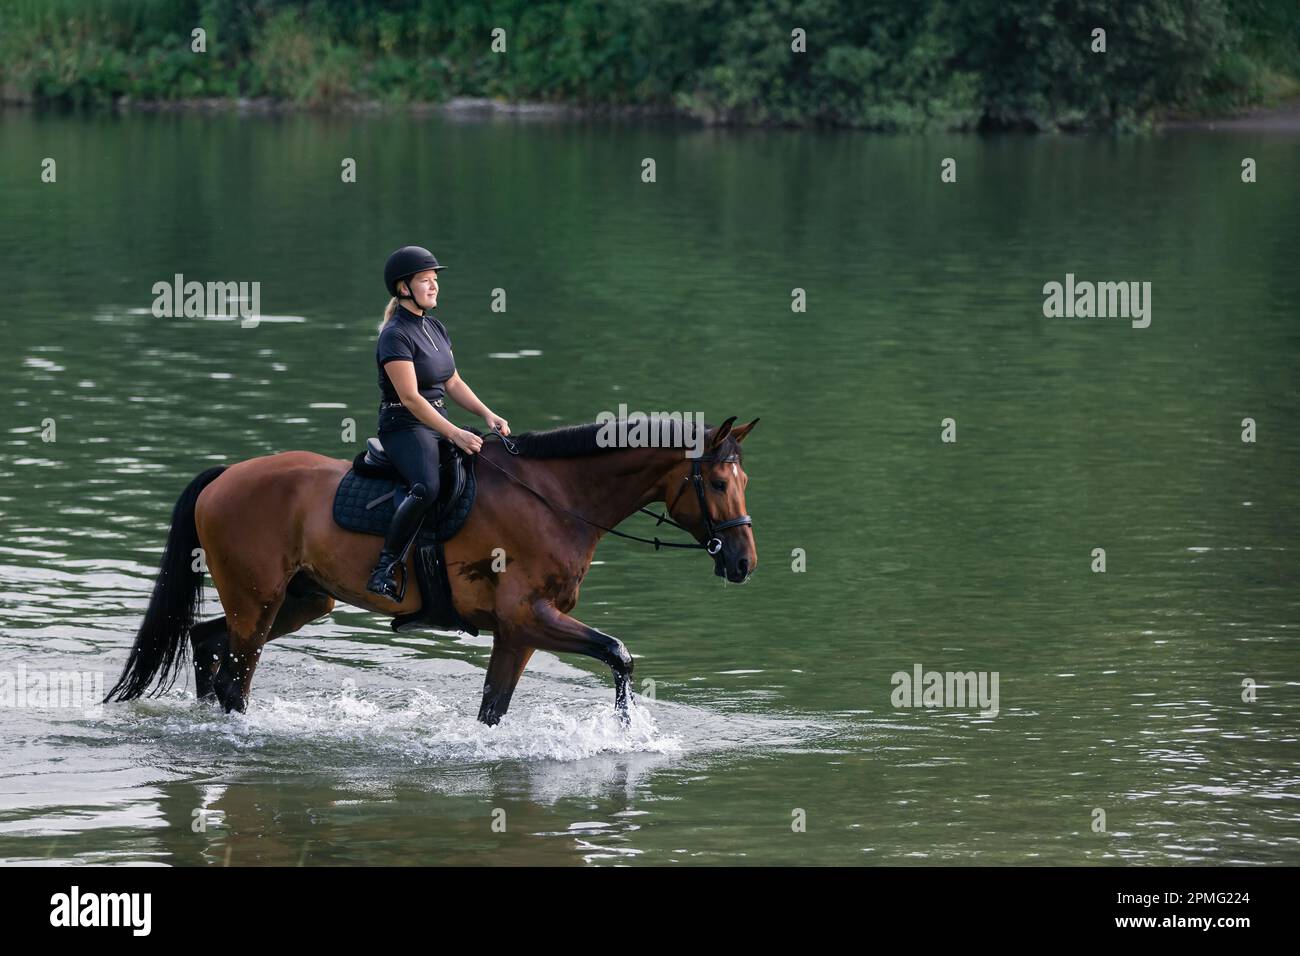 Une femelle à cheval dans un ensemble de jockey noir à cheval sur un cheval de châtaignier le long de la rivière au coucher du soleil. Concept de loisirs, d'équitation et de nature. Banque D'Images